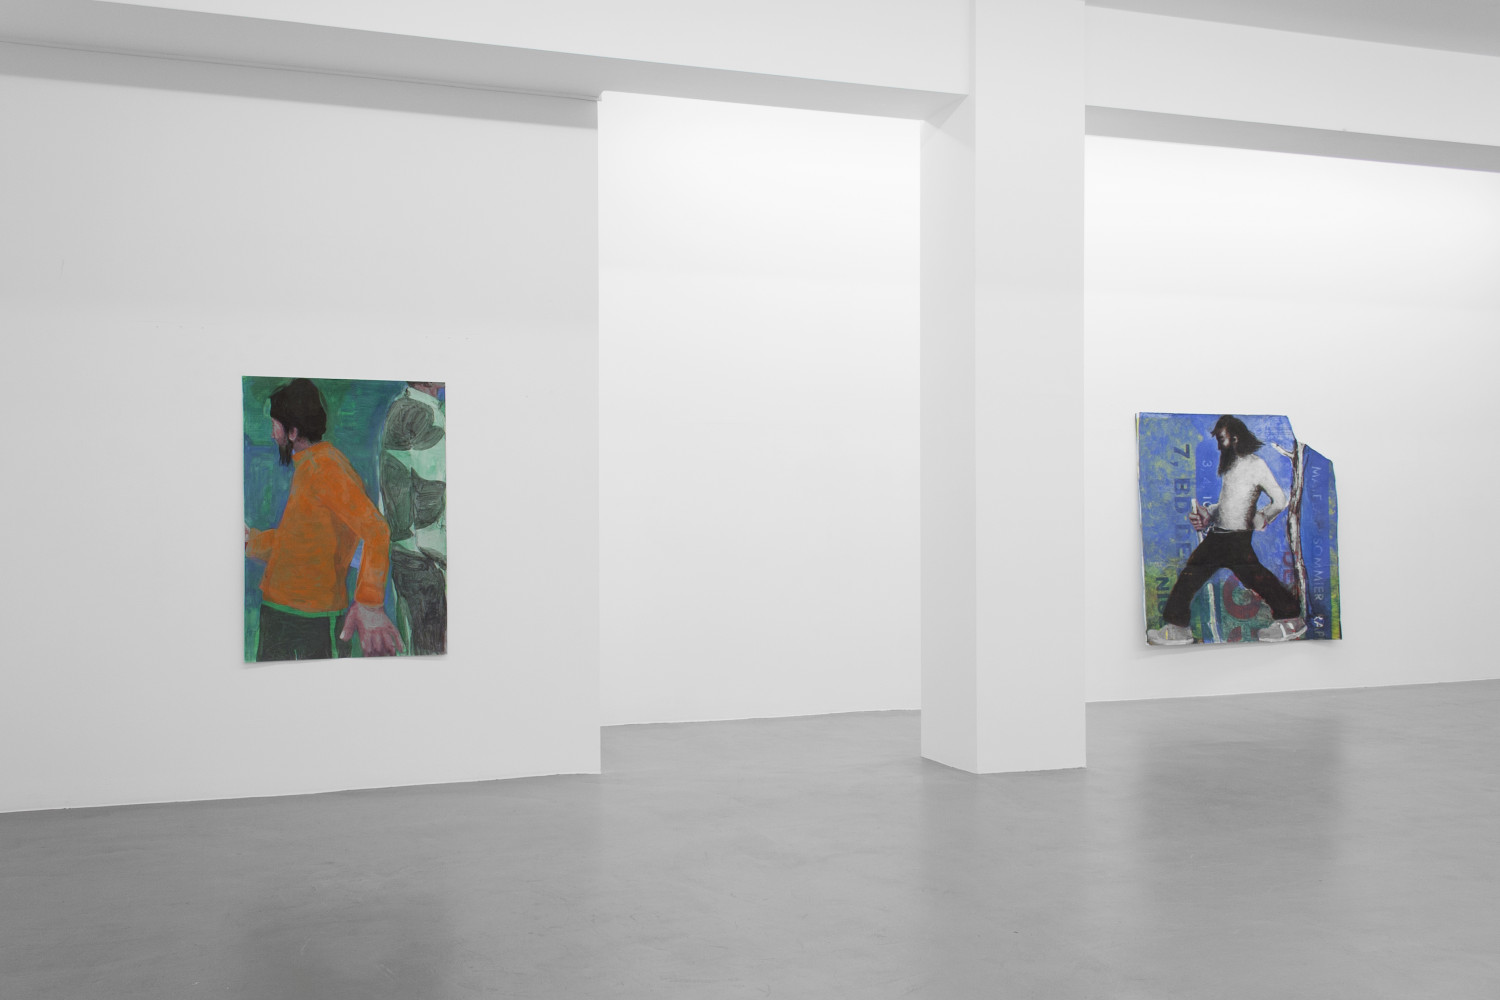 Jean Charles Blais, ‘Superposition’, Installation view, Buchmann Galerie, 2016